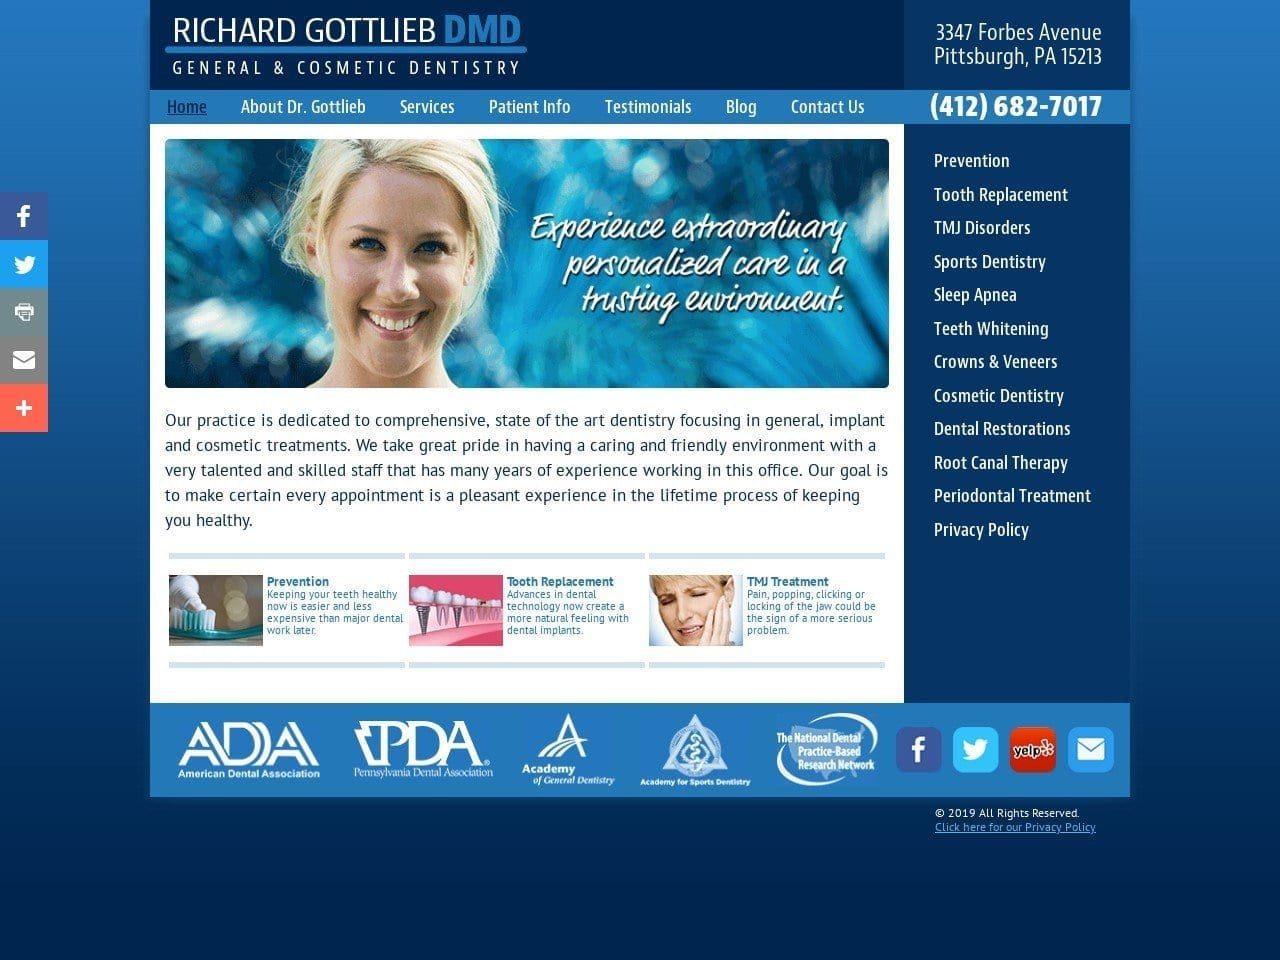 Gottlieb Richard DMD Website Screenshot from richardgottliebdmd.com